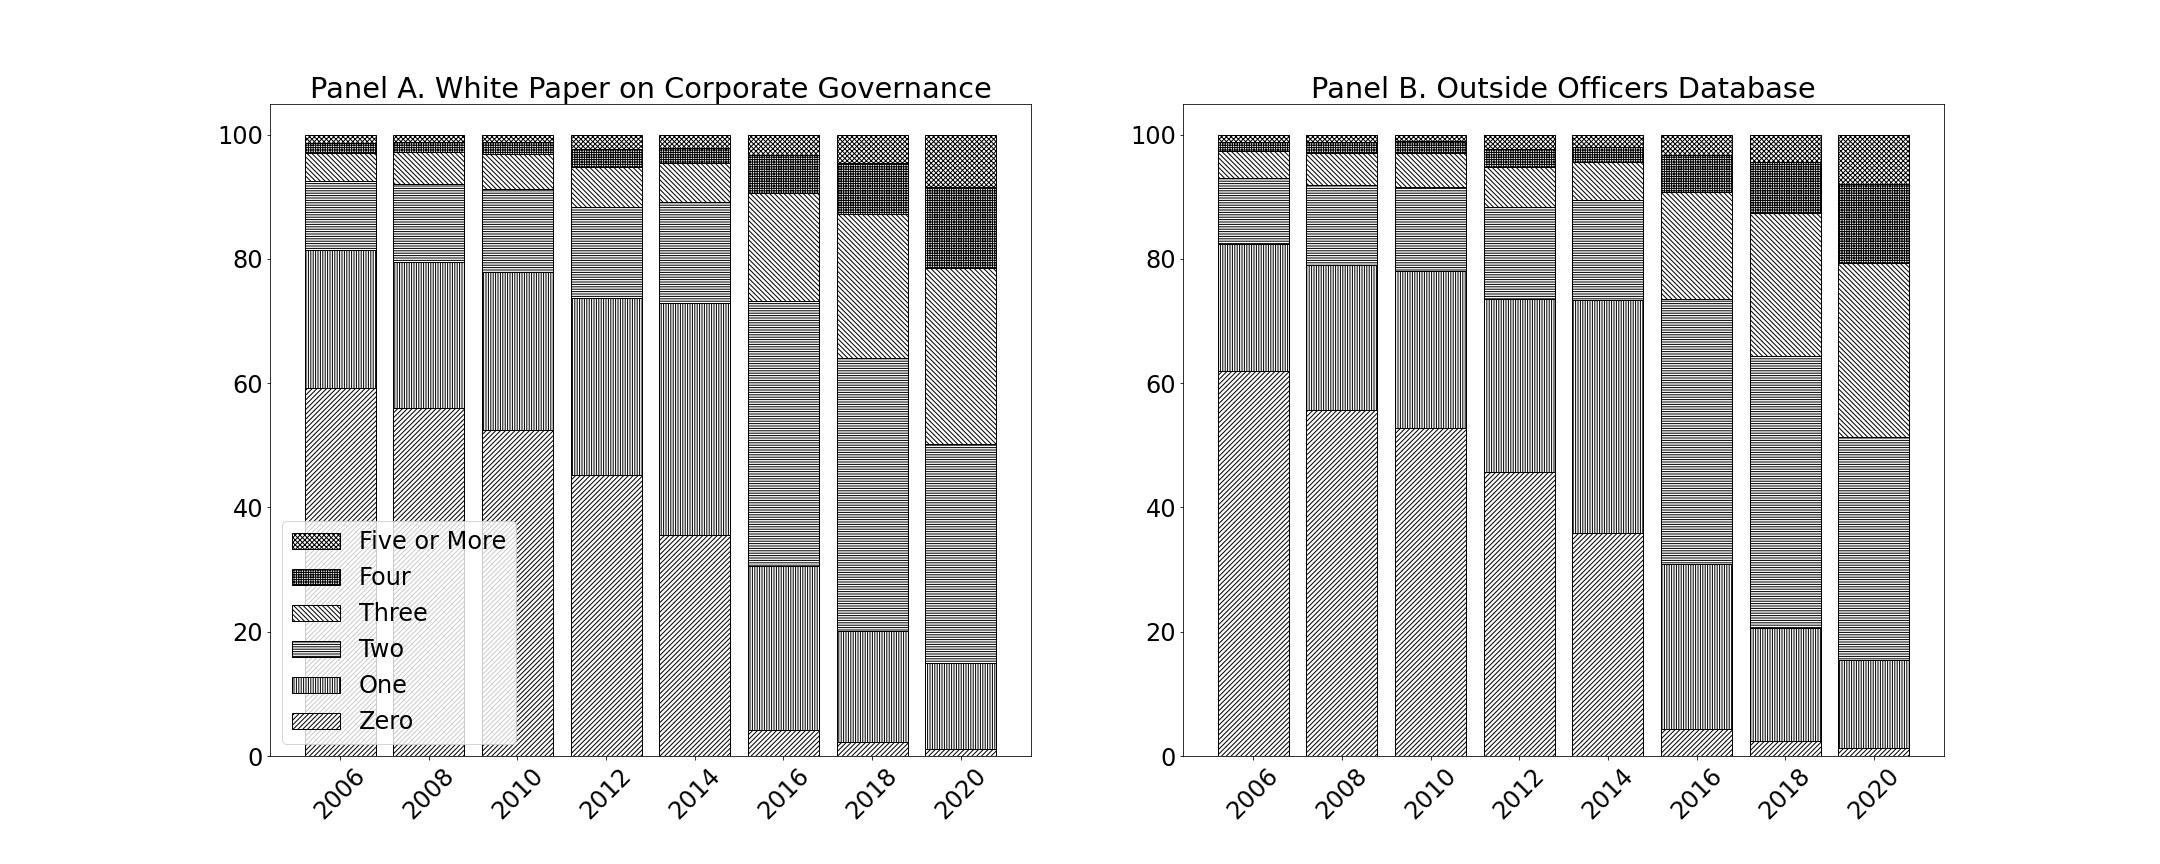 社外取締役の人数別分布の比較（左：東京証券取引所コーポレートガバナンス白書，右：本データベース）